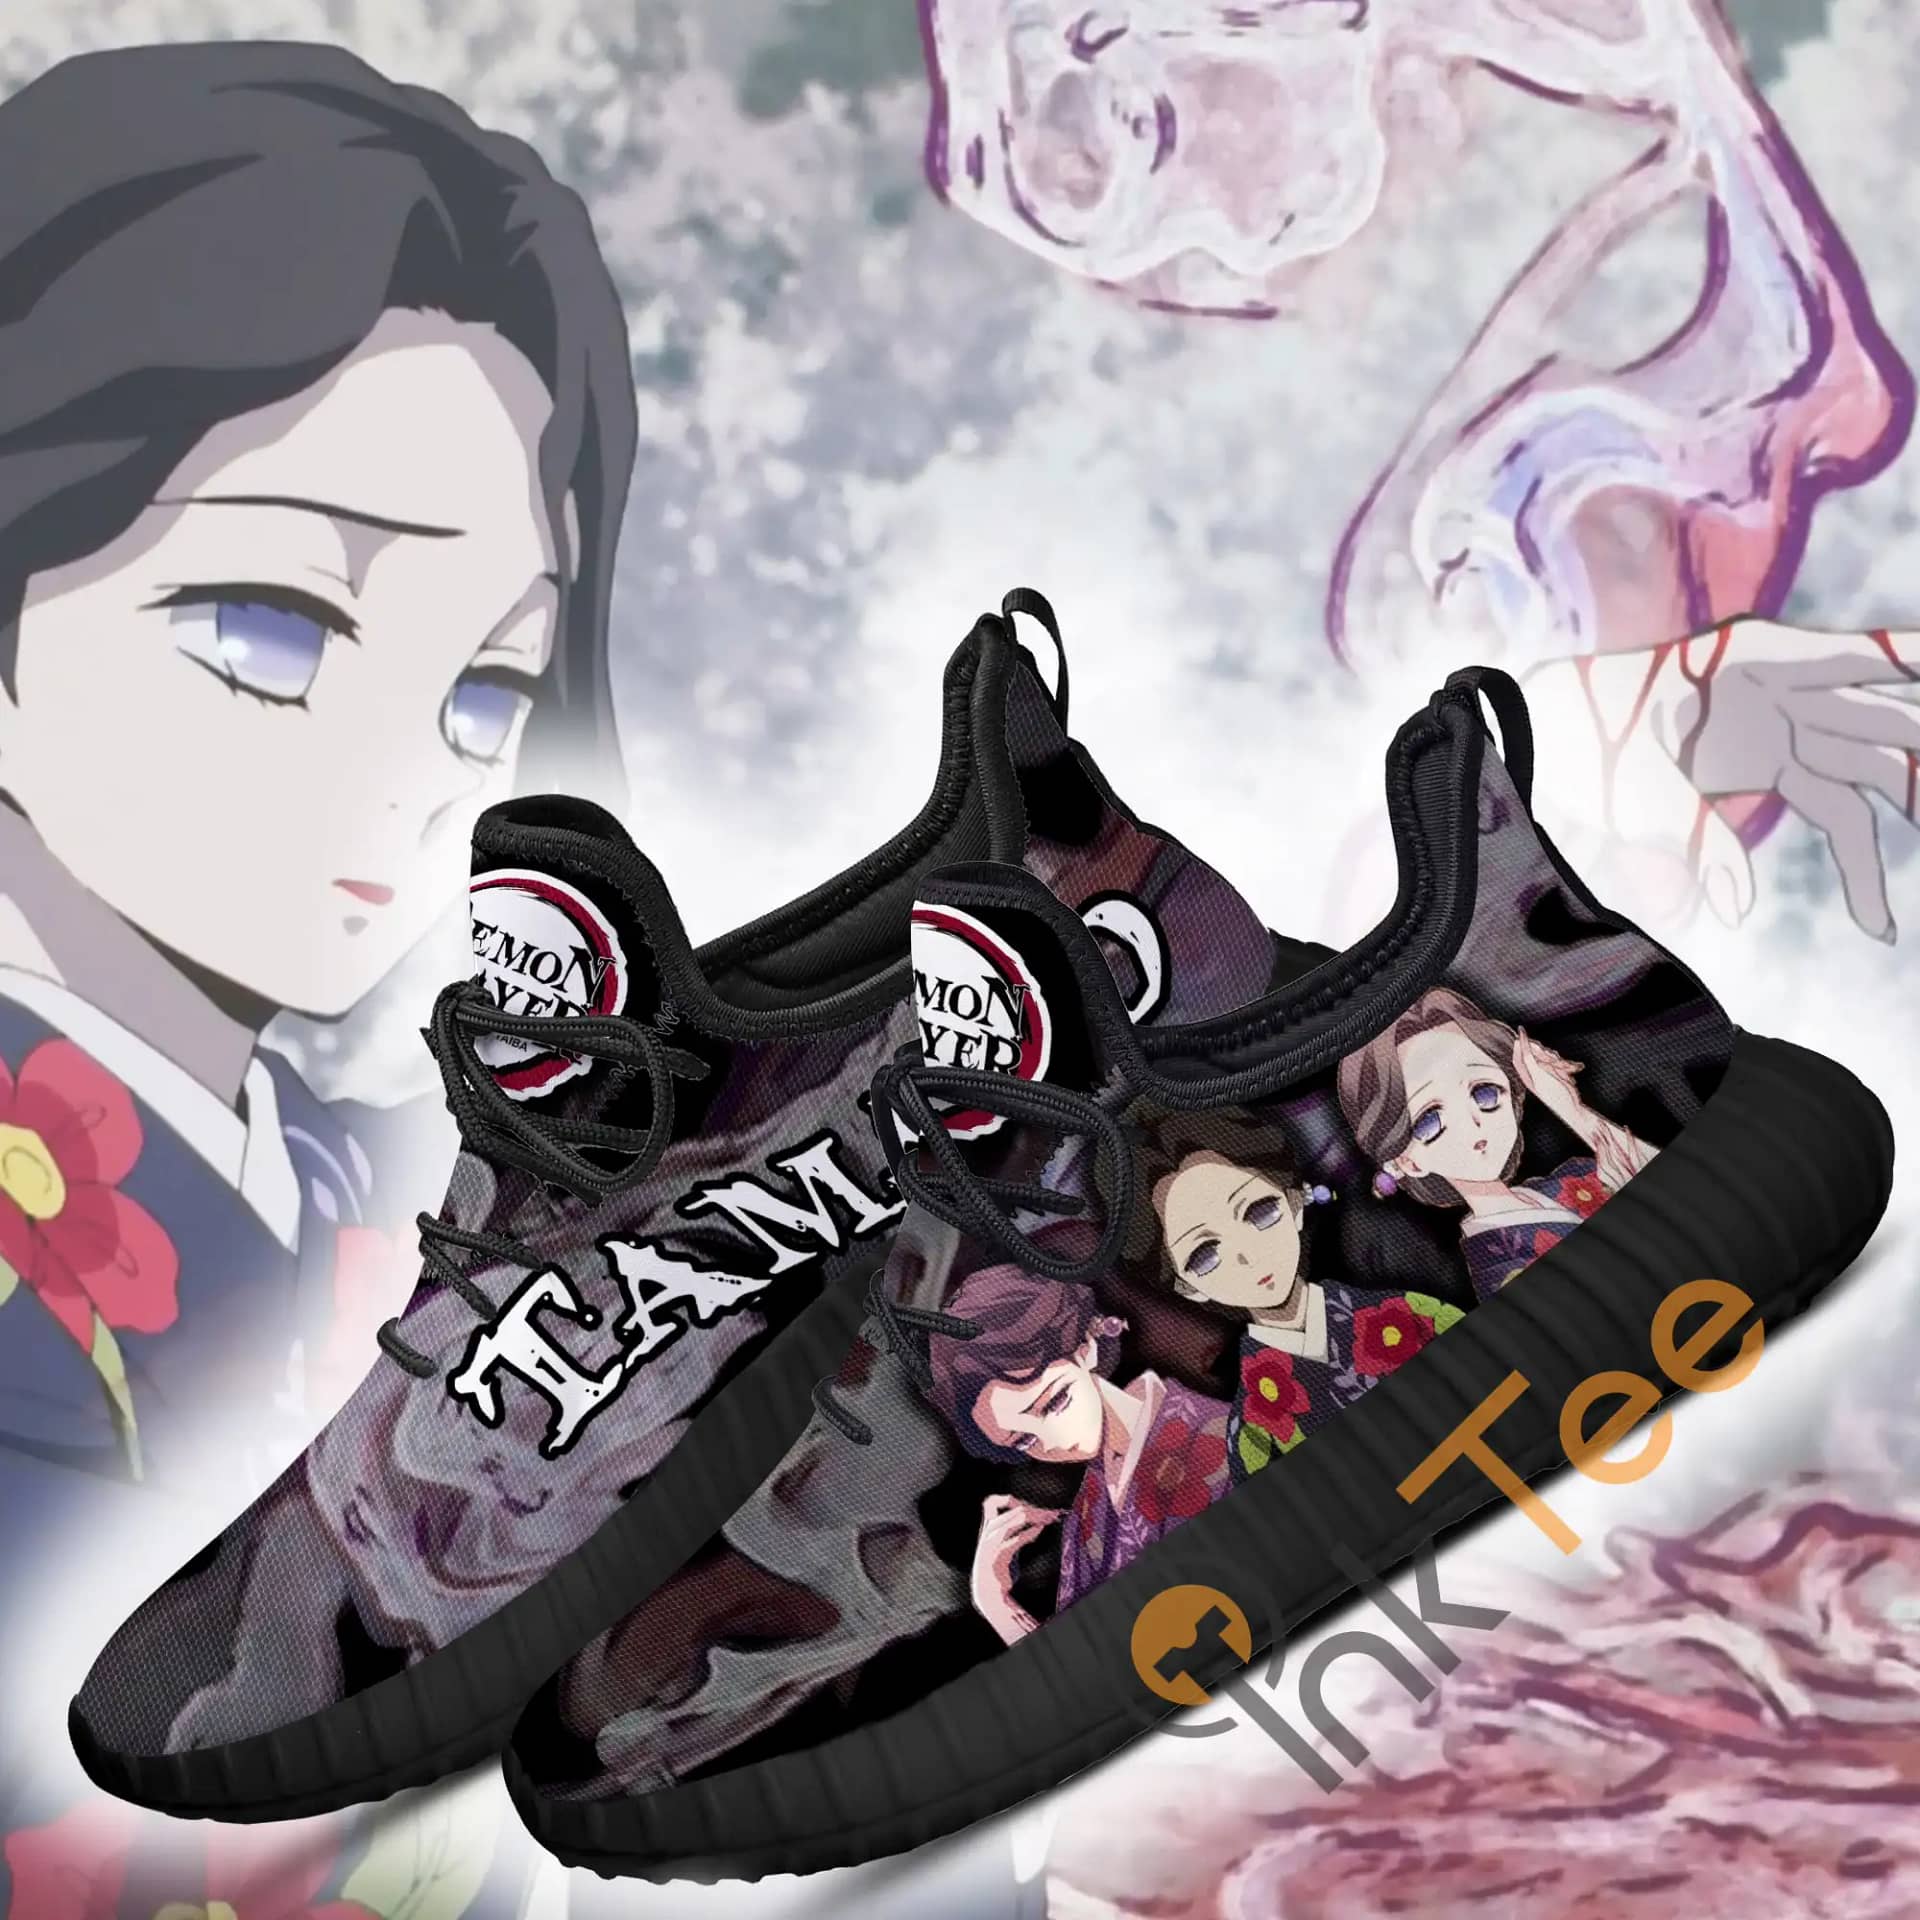 Inktee Store - Demon Slayer Lady Tamayo Custom Anime Amazon Reze Shoes Image